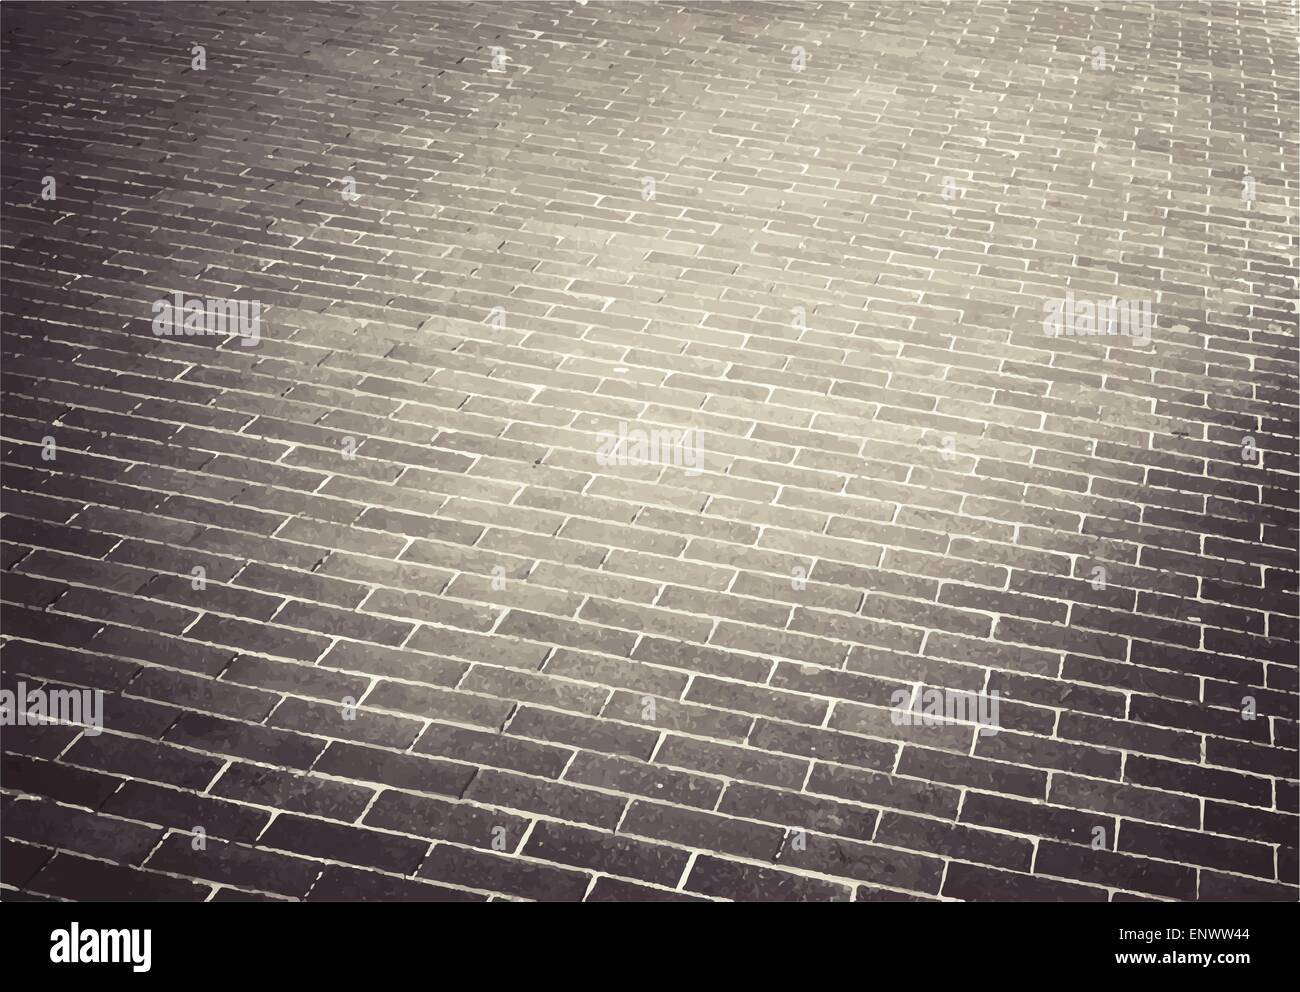 Luce di mattoni marroni stone street road. Il marciapiede, pavimentazione texture Illustrazione Vettoriale